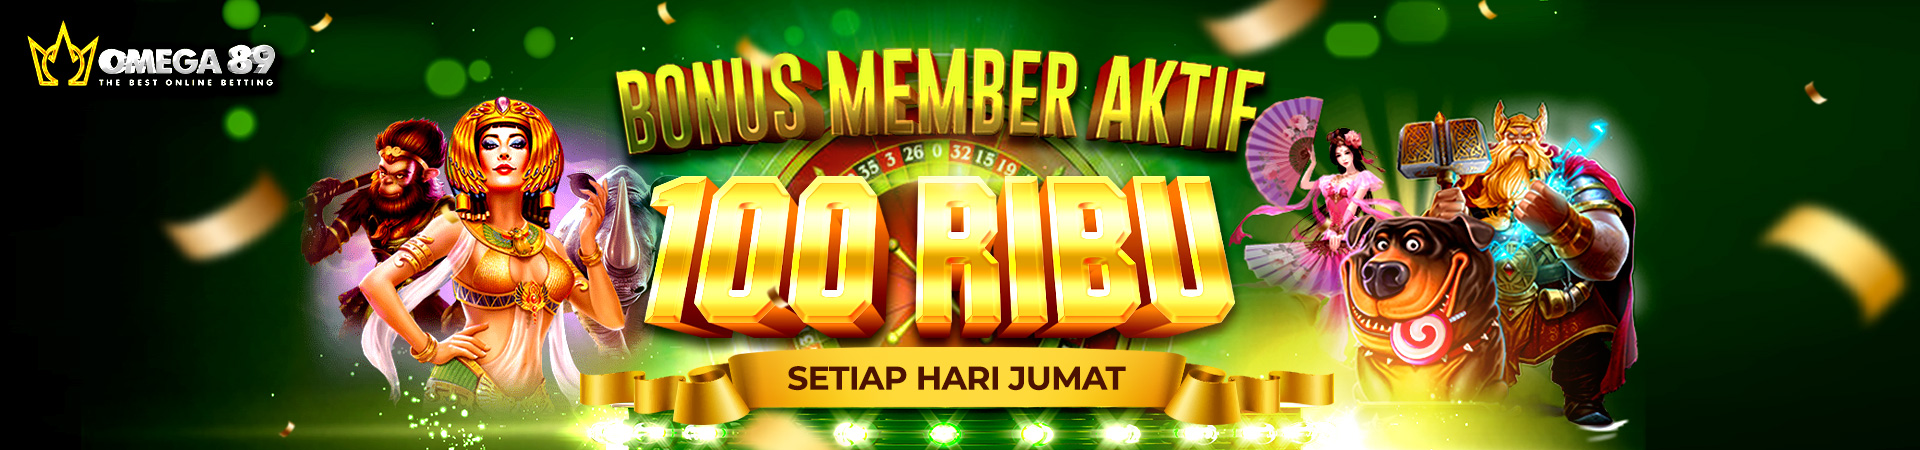 Bonus Member Aktif 100 rb